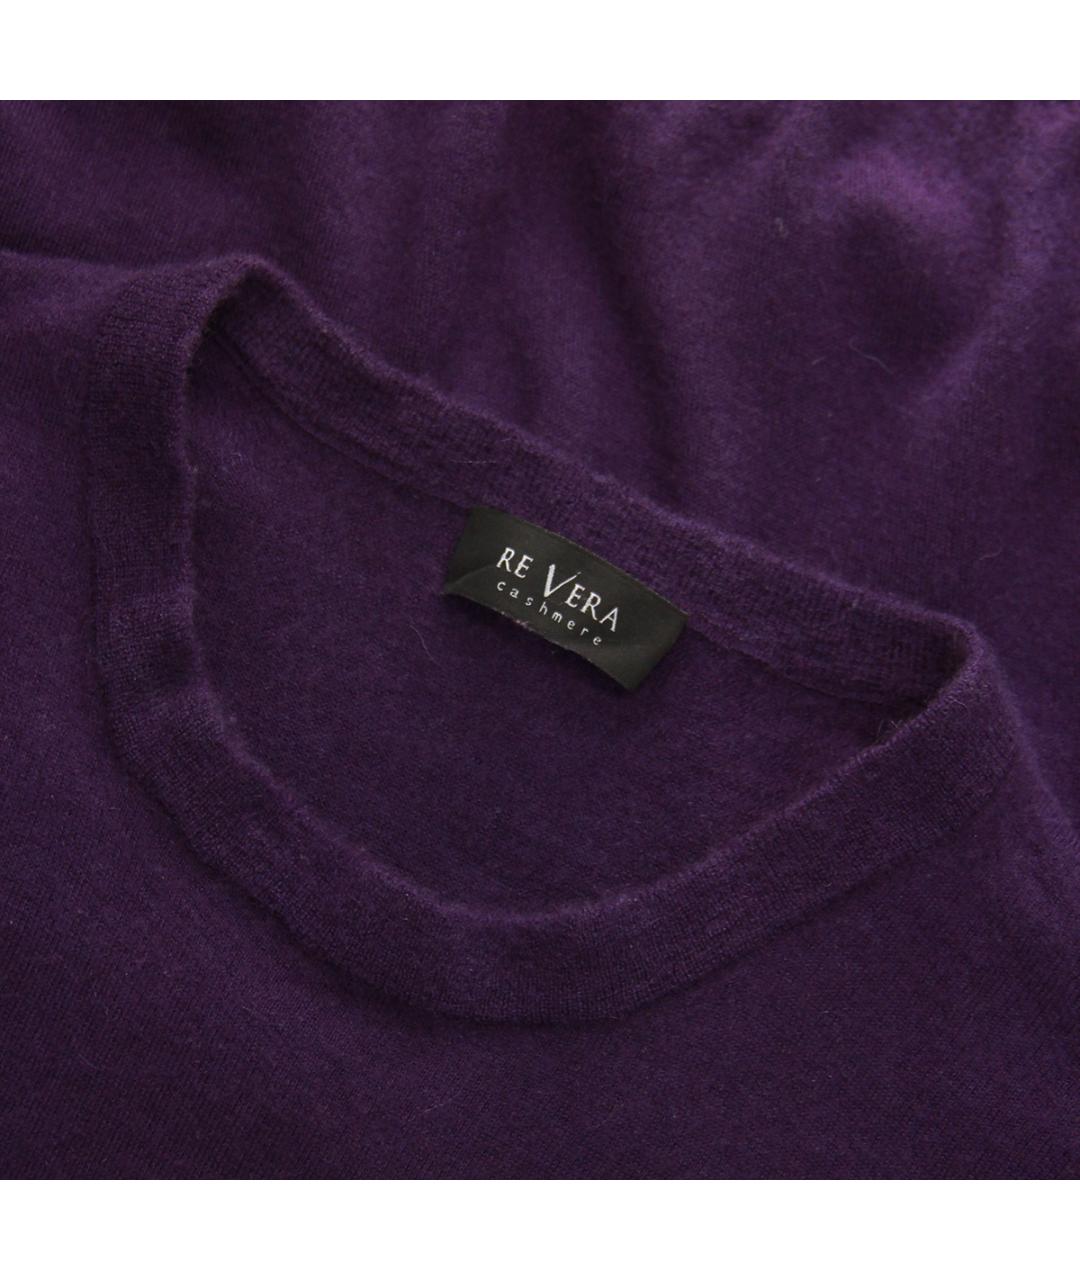 RE VERA Фиолетовый кашемировый джемпер / свитер, фото 3